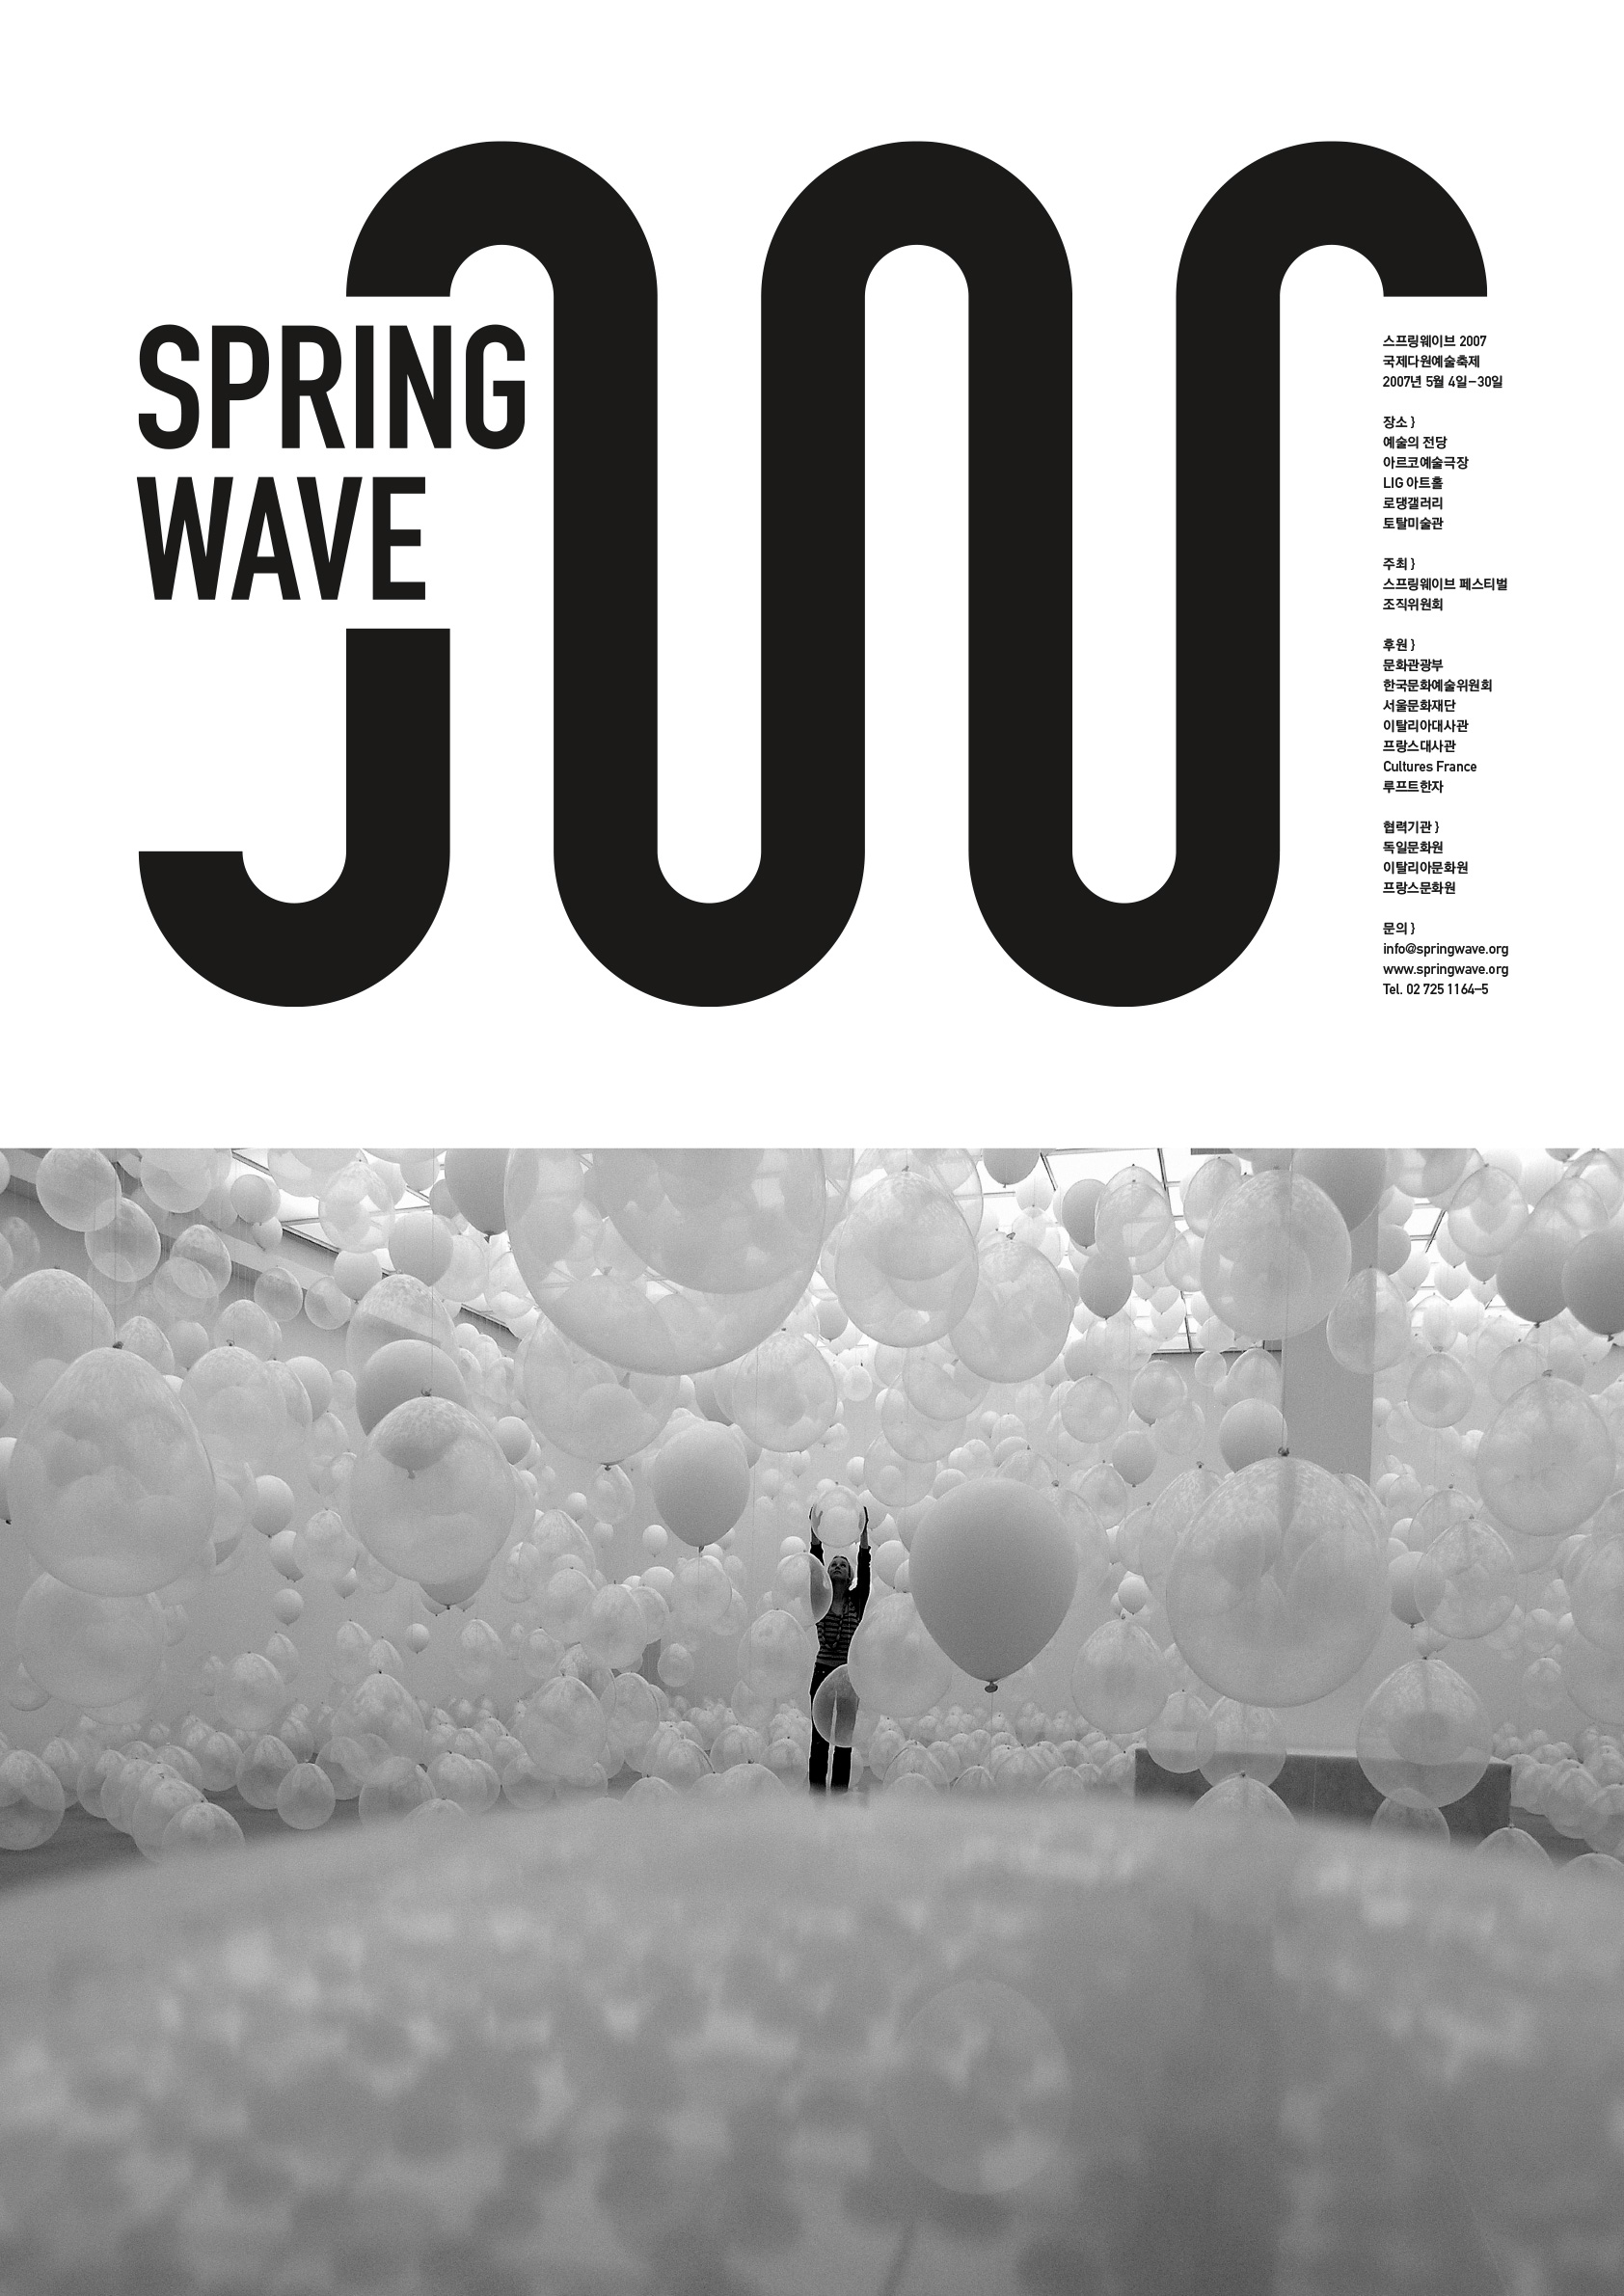 Springwave_poster